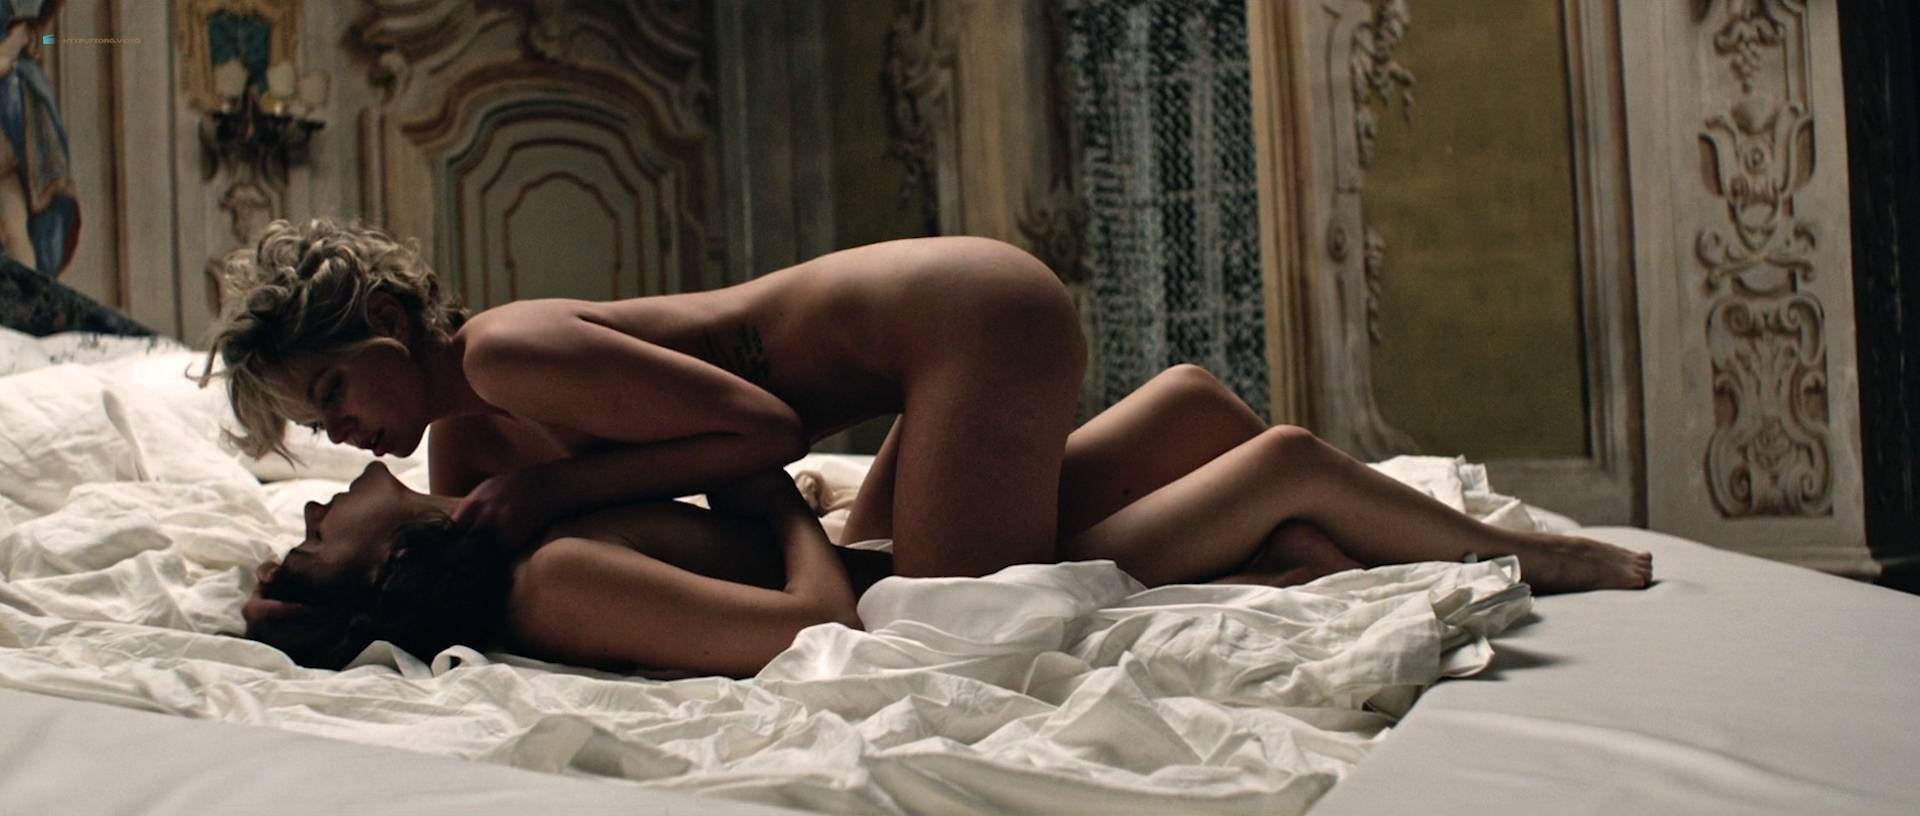 Марта Гастини nude pics.